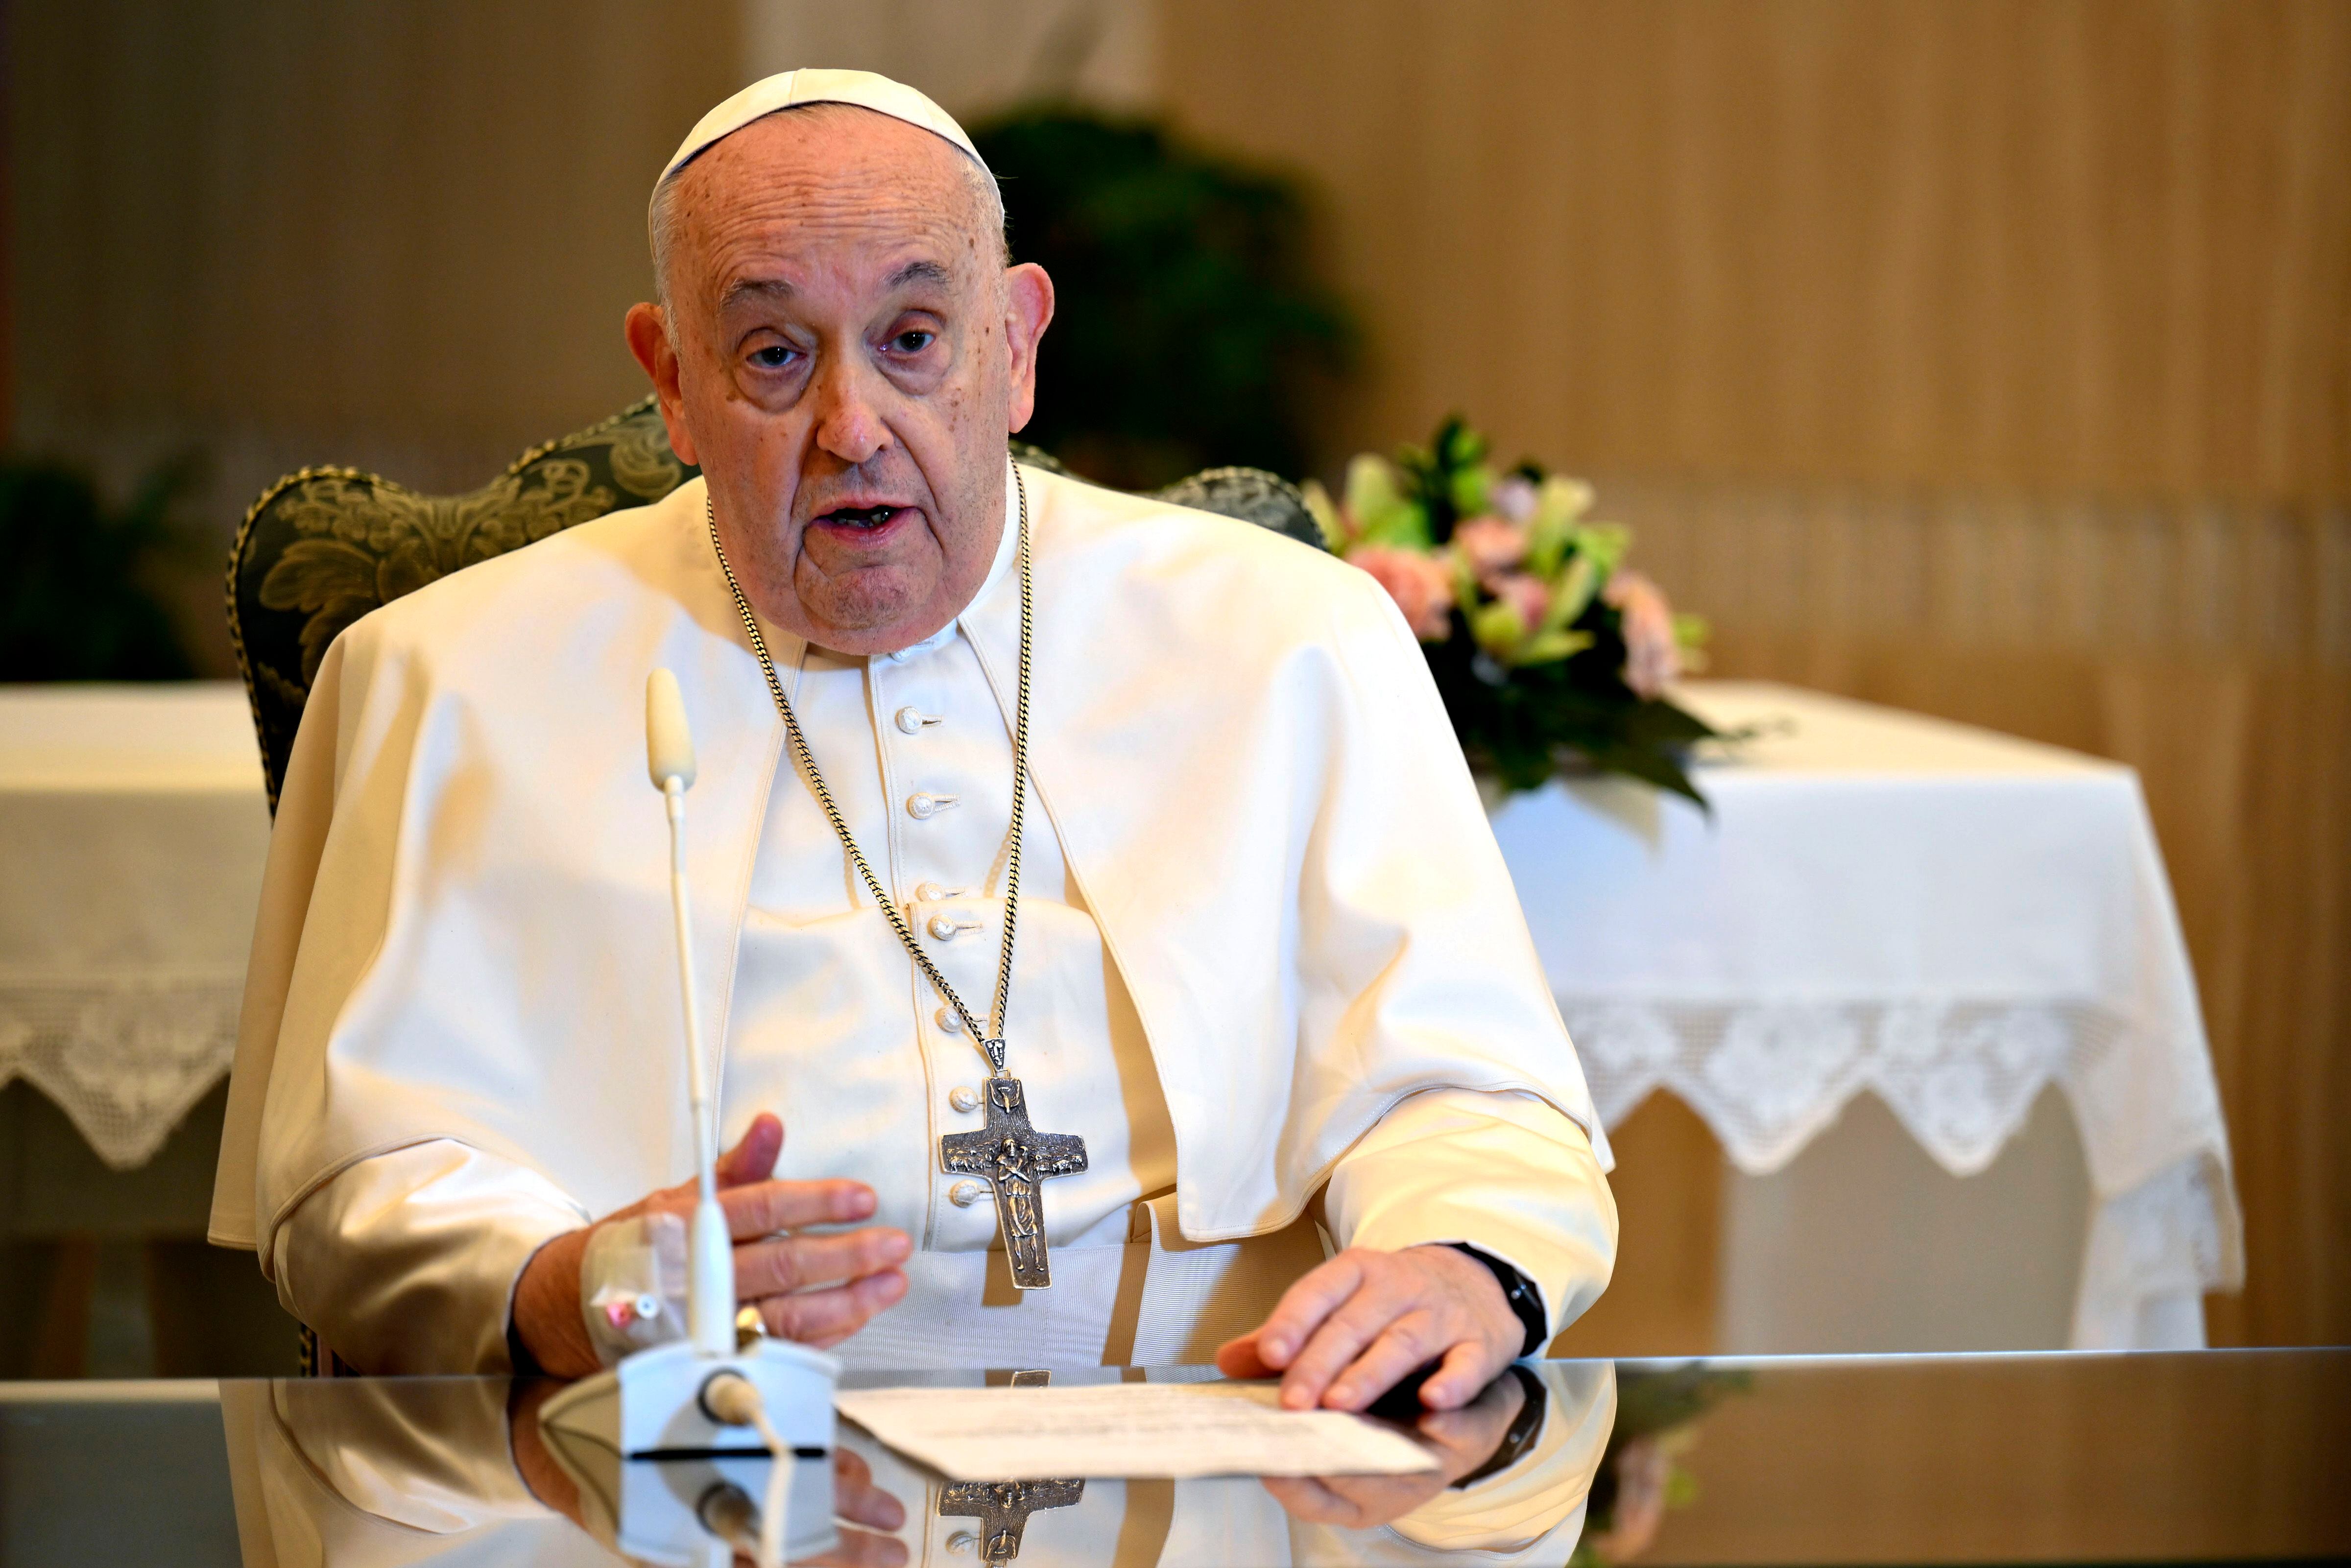 El estado de salud del papa es “bueno y estable” tras su cuadro gripal, según el Vaticano